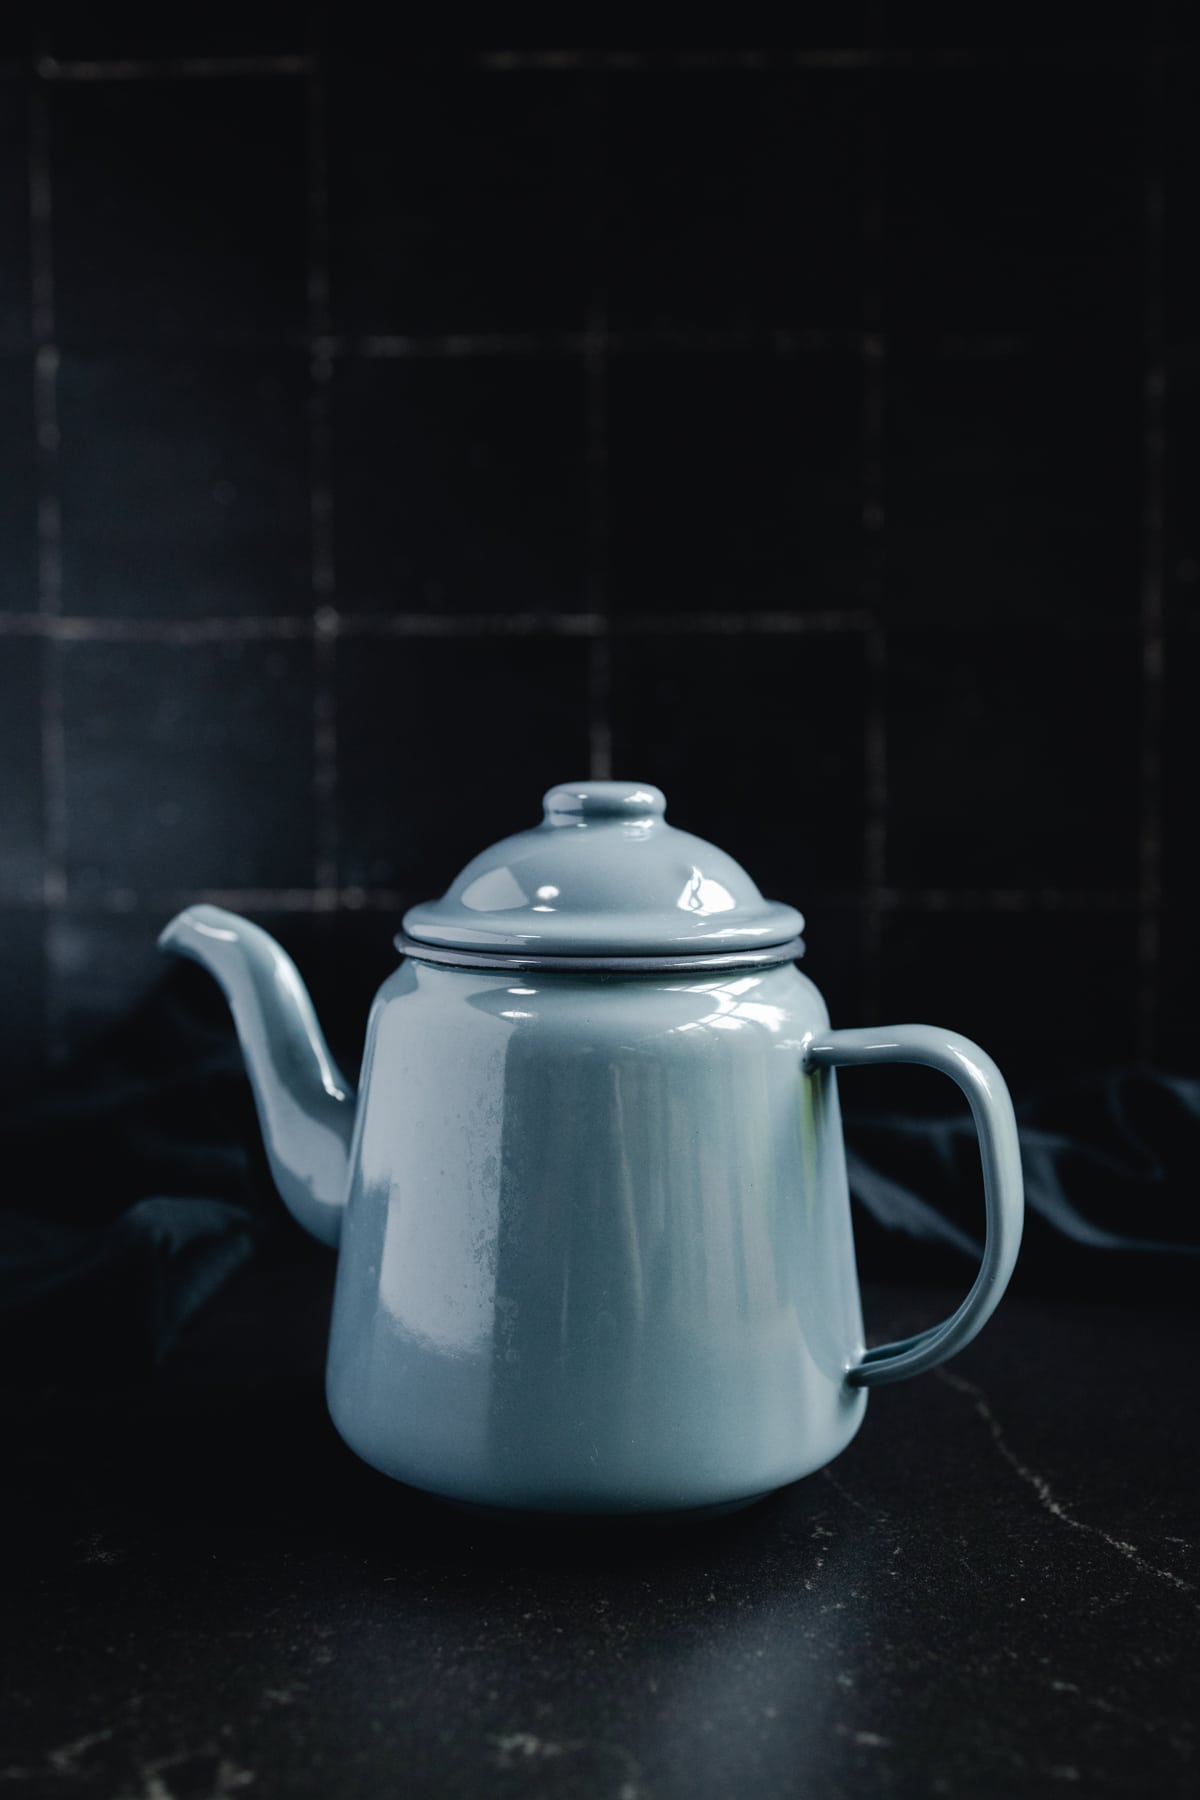 21 Safest Non Toxic Tea Kettles 2024